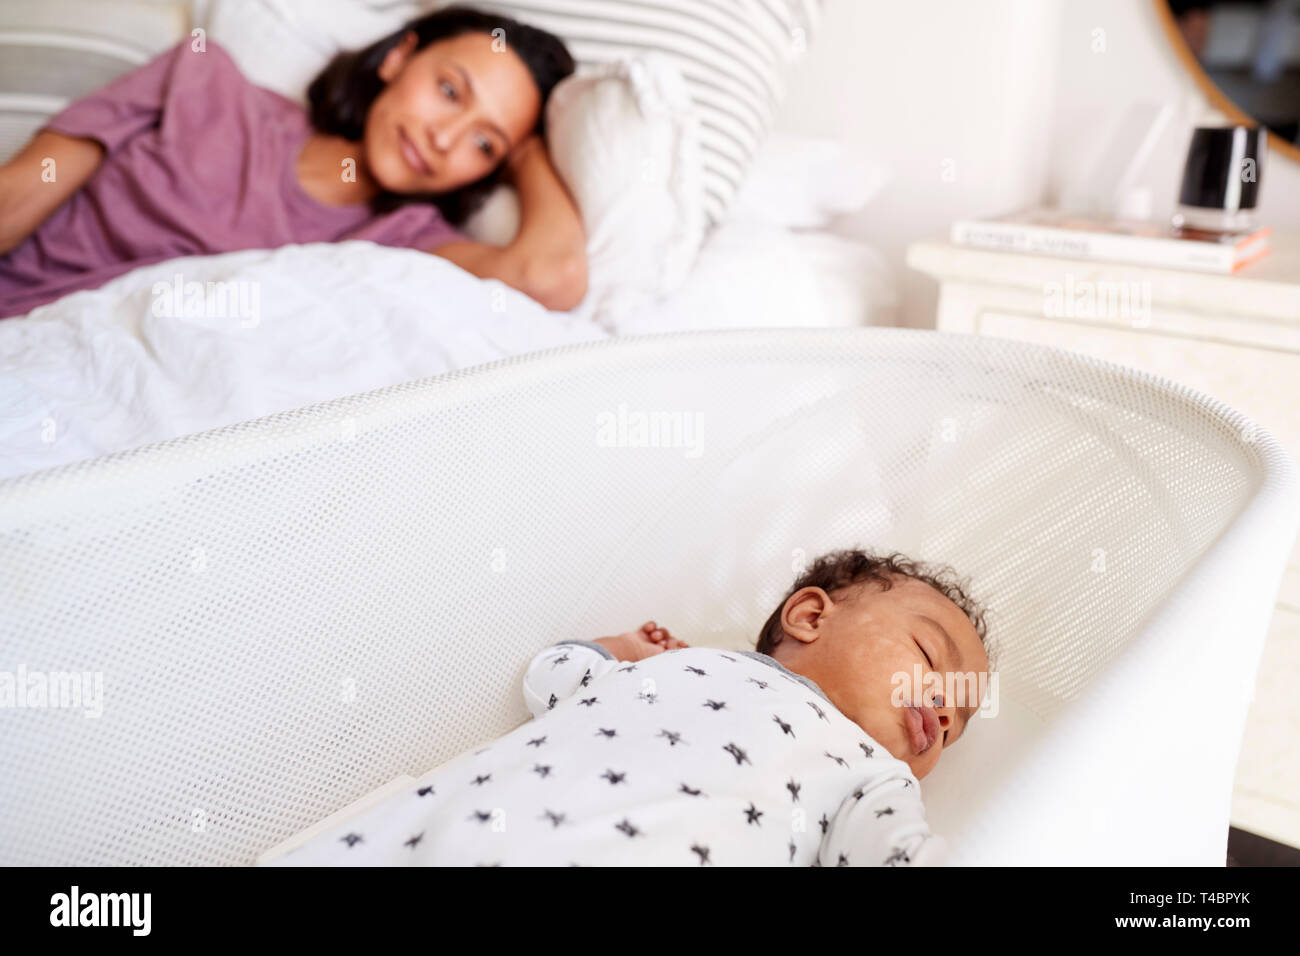 Cerca del adulto joven madre acostada en la cama mirando a su bebé de tres meses durmiendo en su cuna Foto de stock